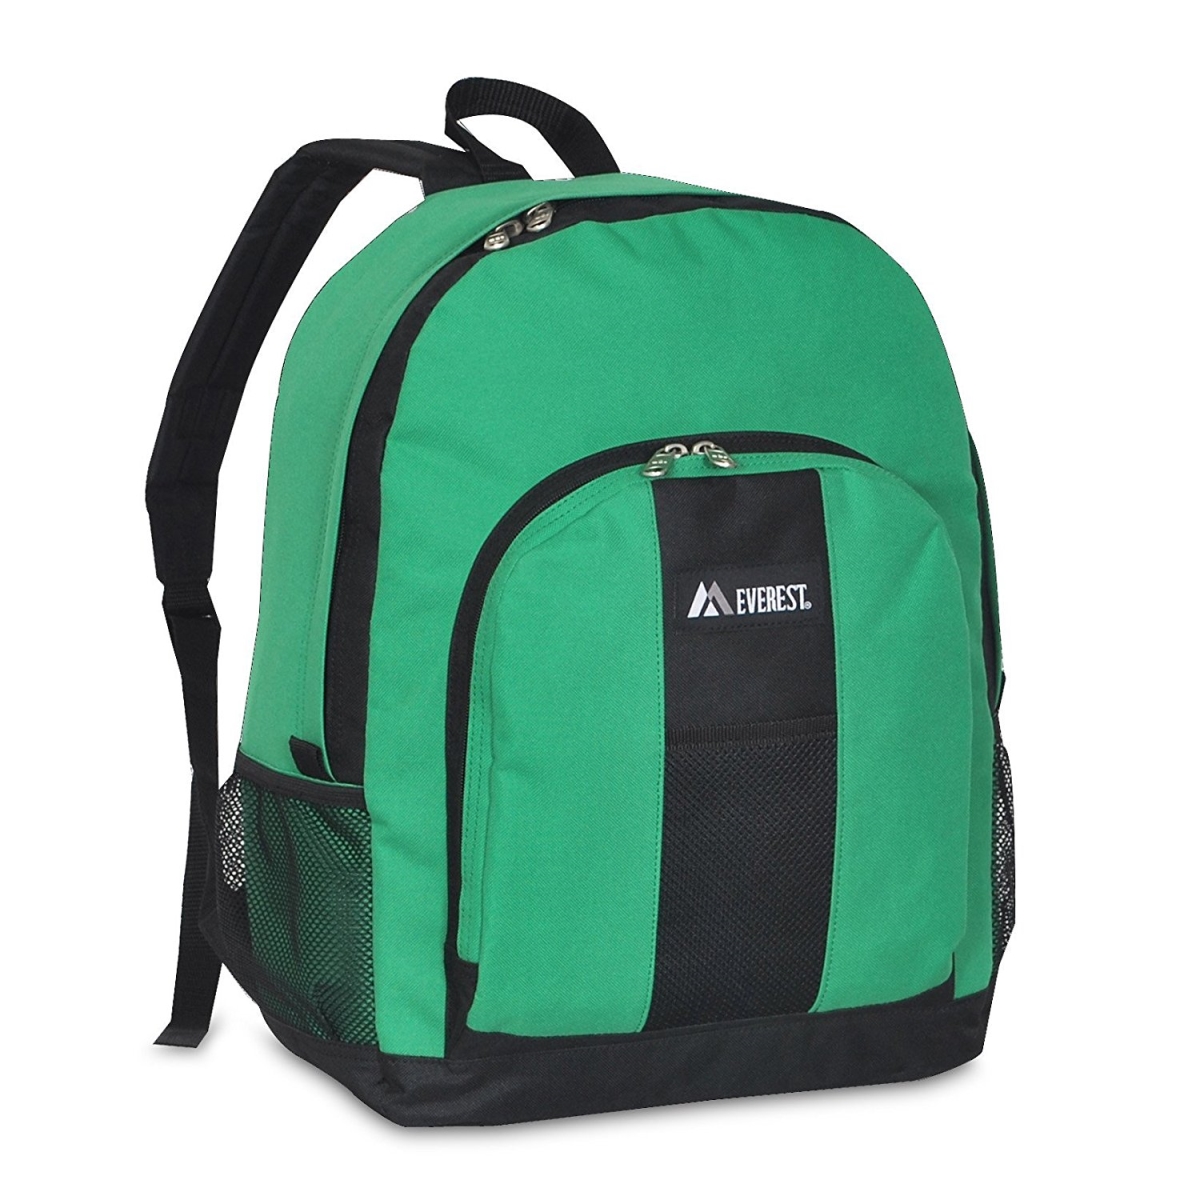 Bp2072-emgrn-bk Backpack With Front & Side Pockets - Emerald Green & Black